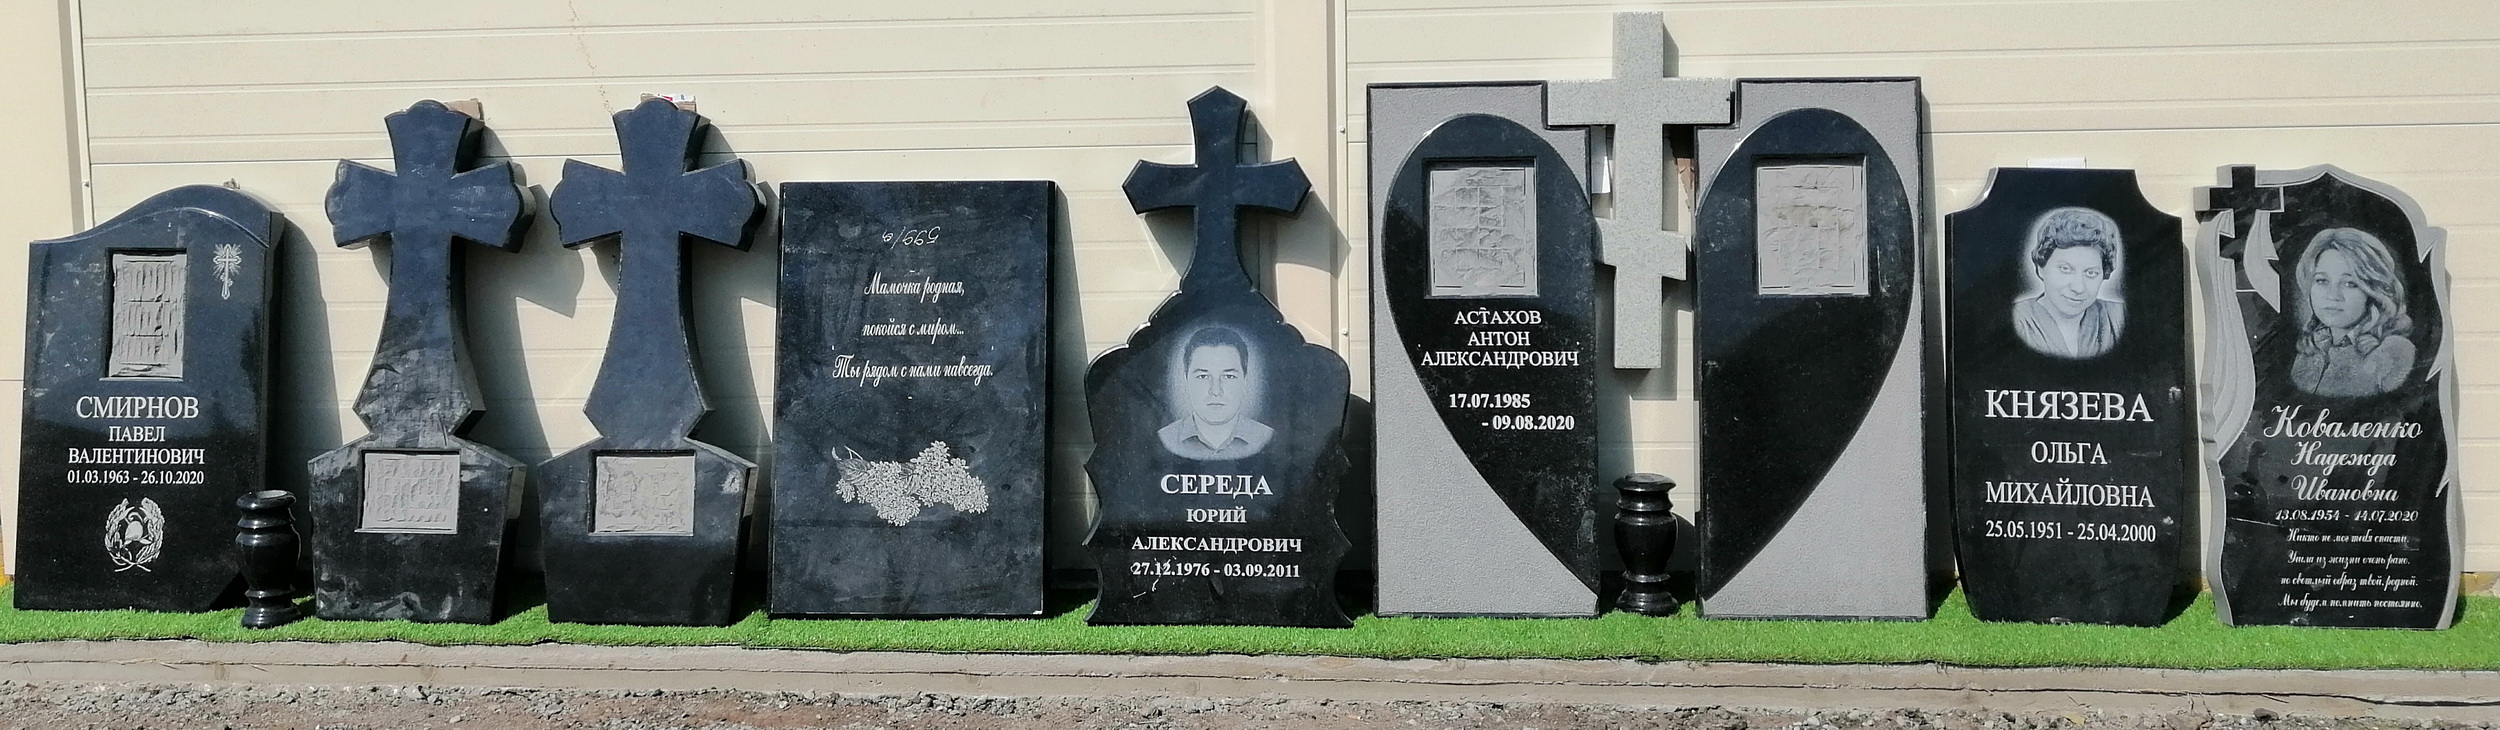 Памятники на могилу в Пушкино